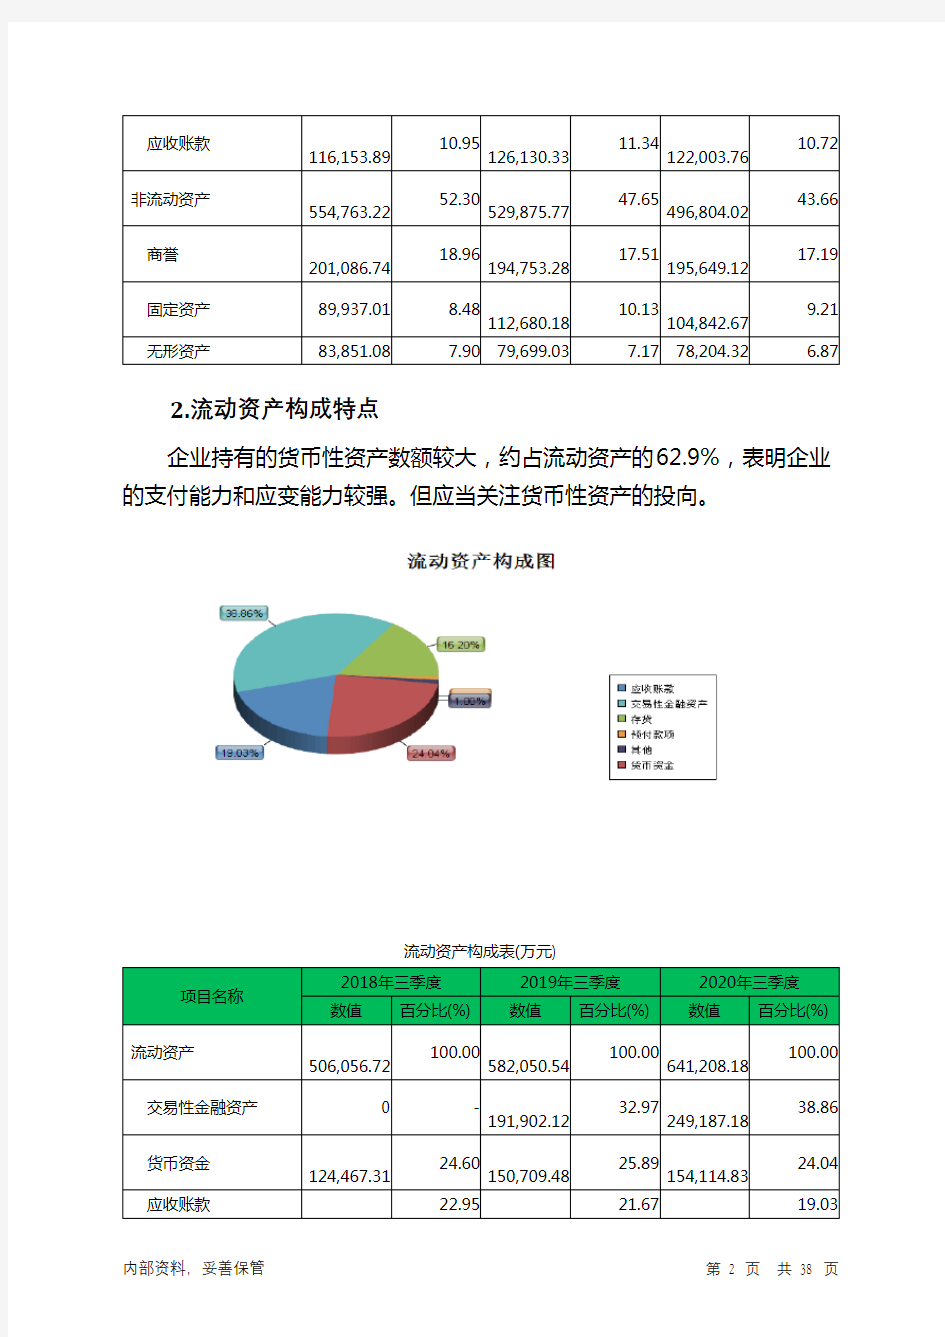 上海家化2020年三季度财务分析详细报告